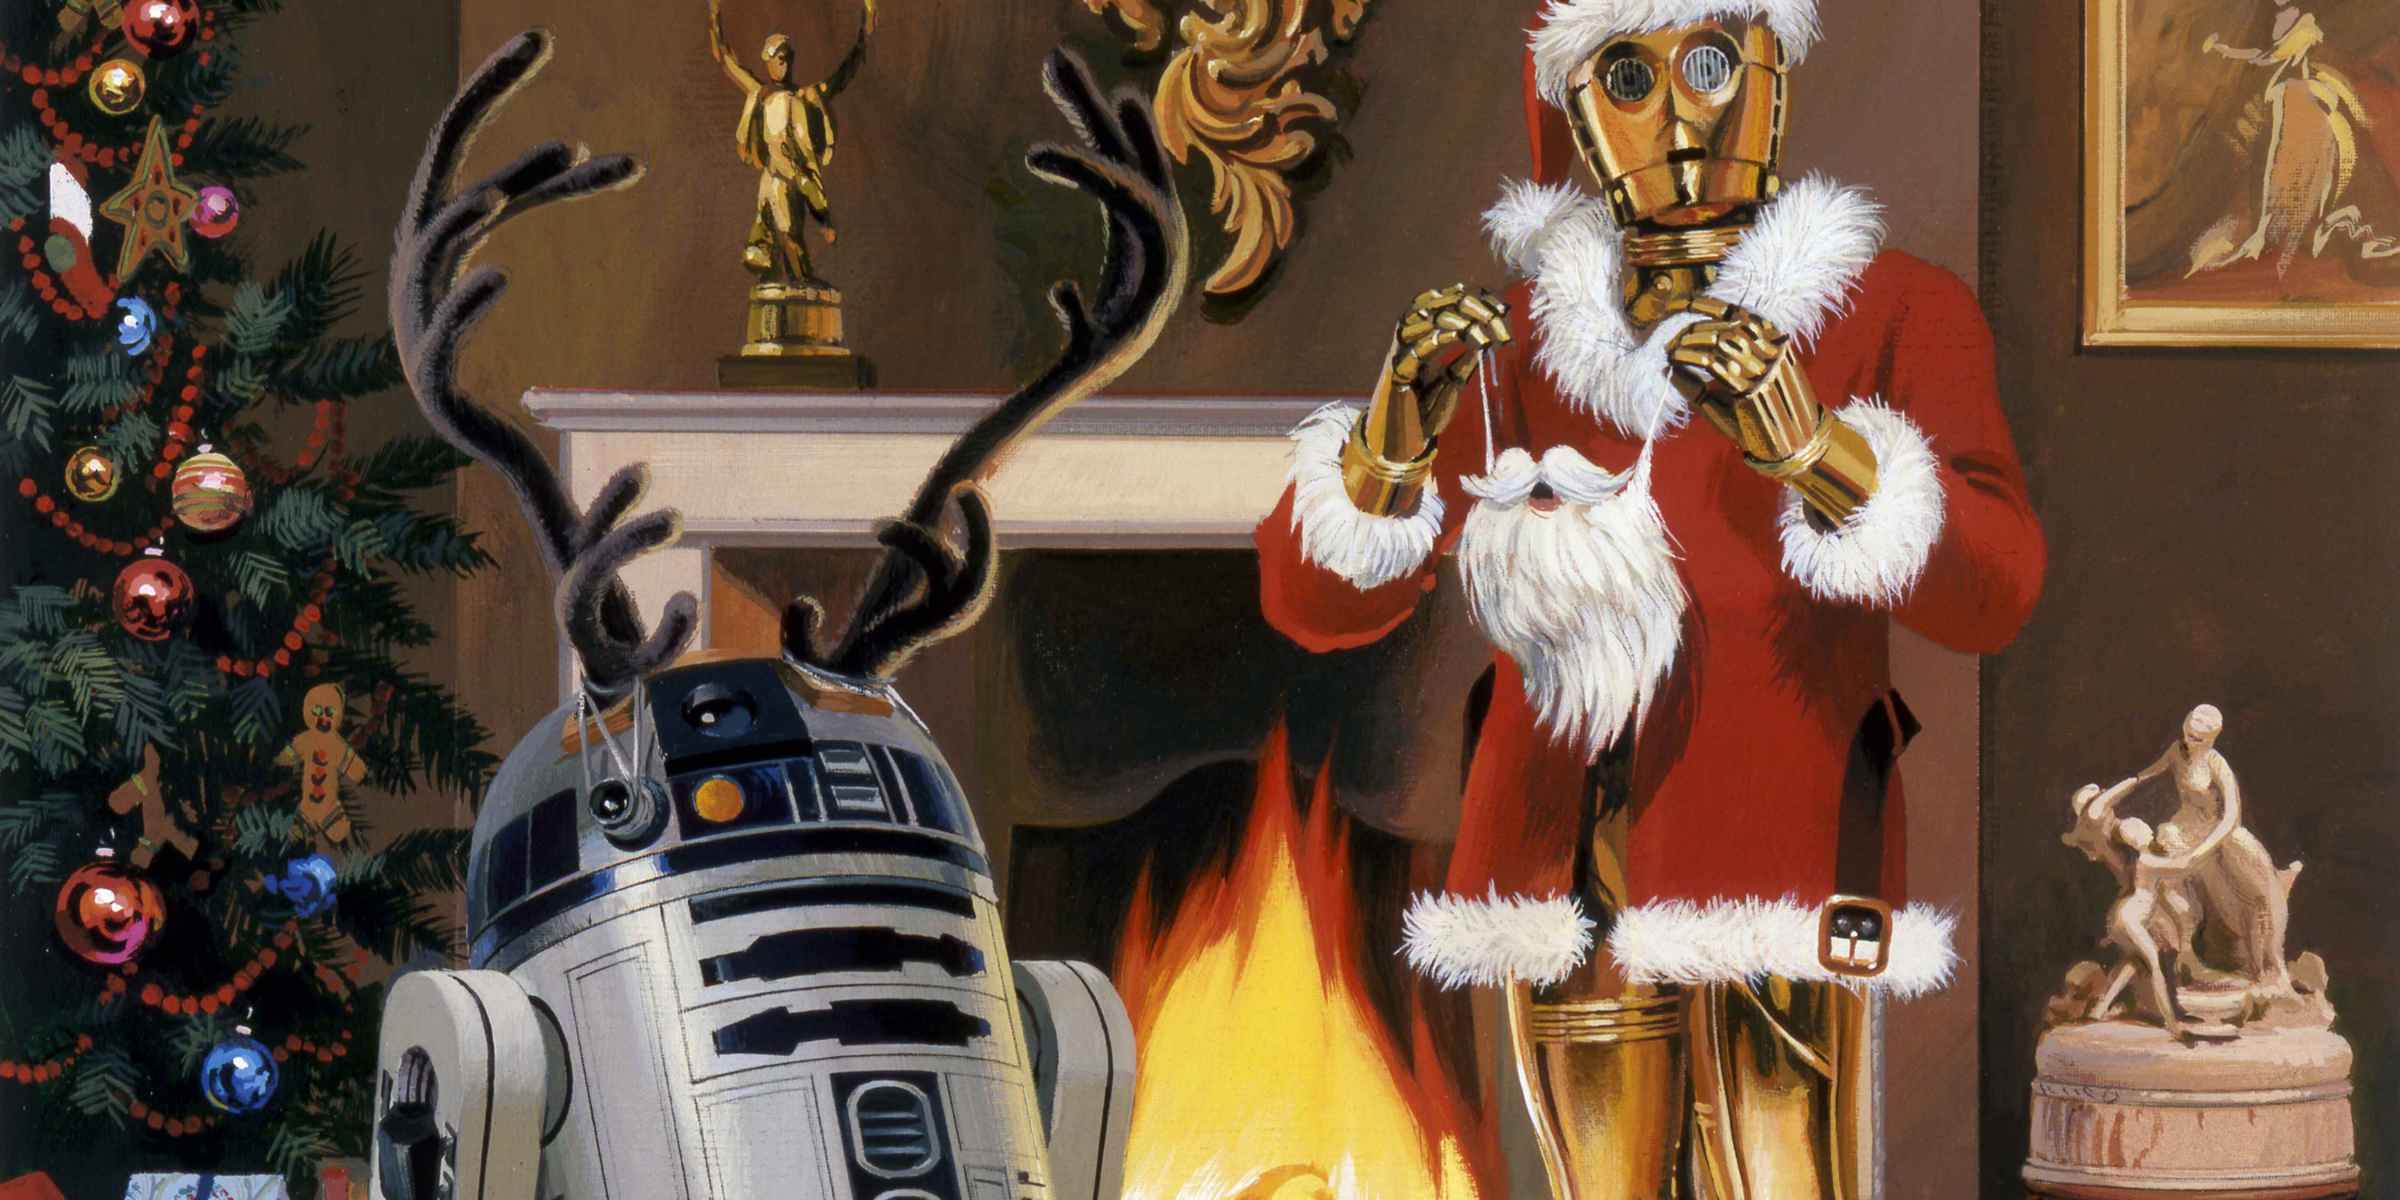 Idee Regalo Natale Star Wars.Le 10 Migliori Idee Regalo A Tema Star Wars Ilblogger It